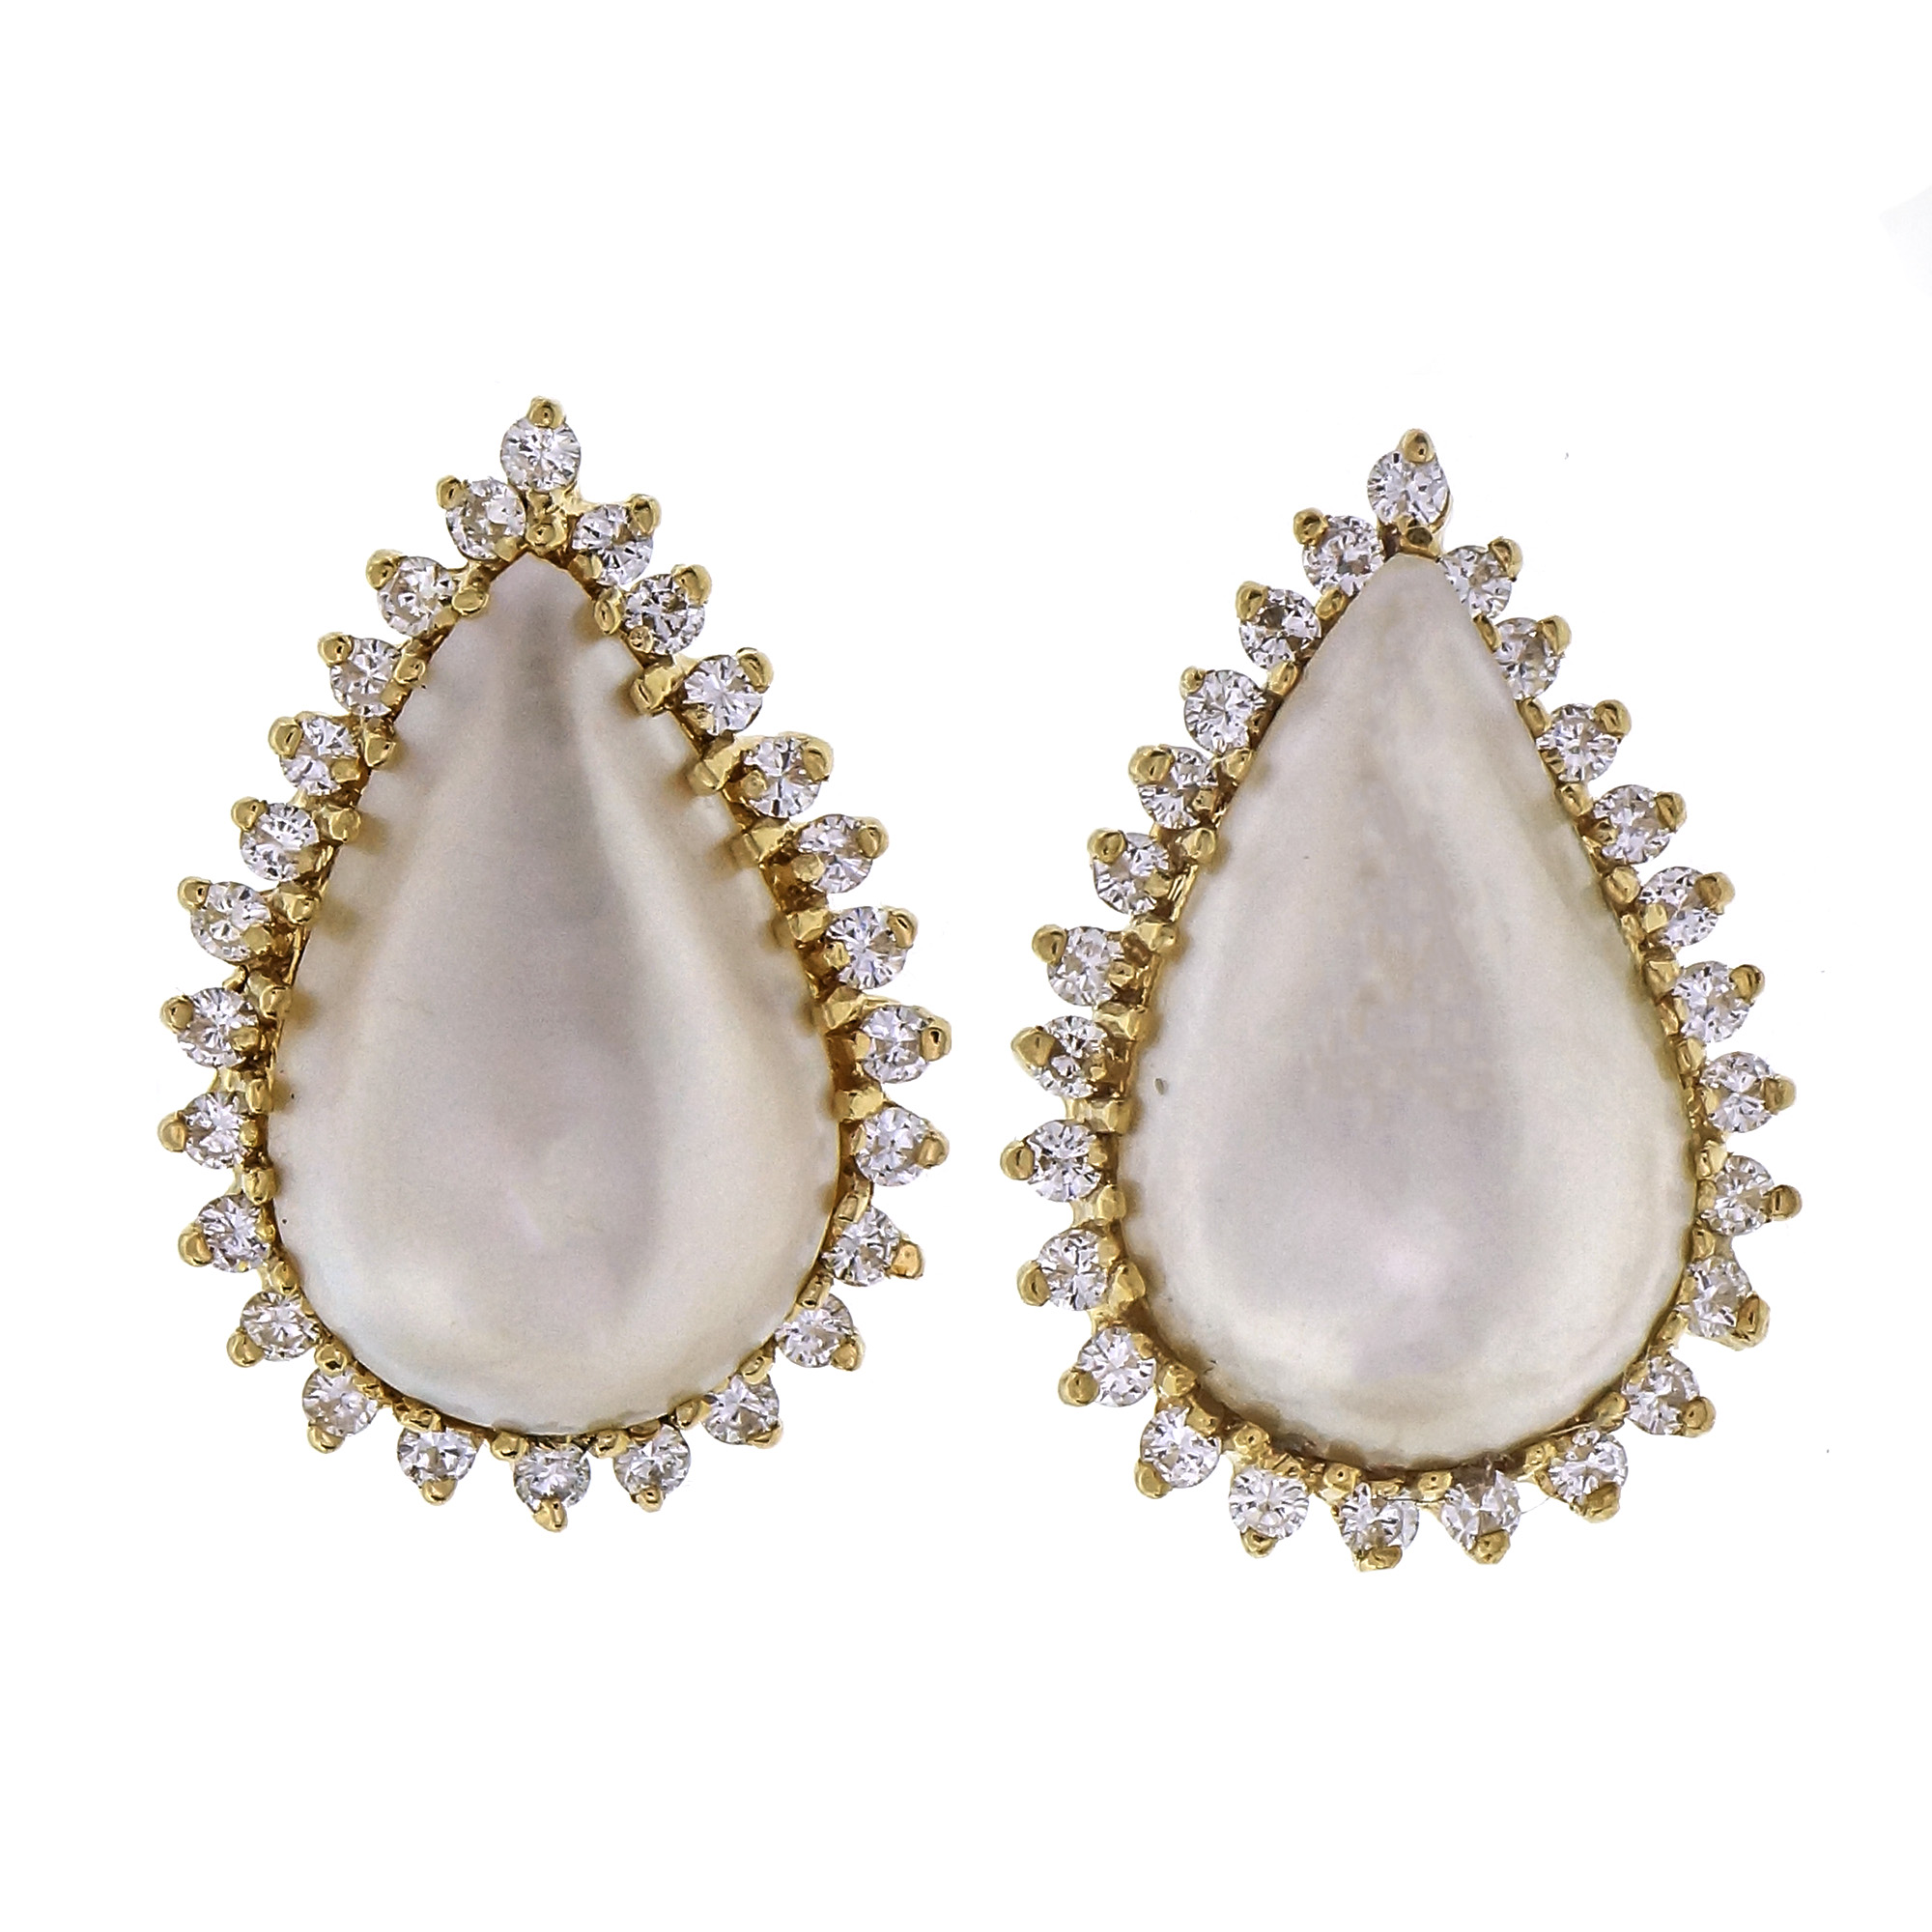 Estate Pear Shape Cultured Mobe Pearl Earrings 14k Gold Diamond | eBay